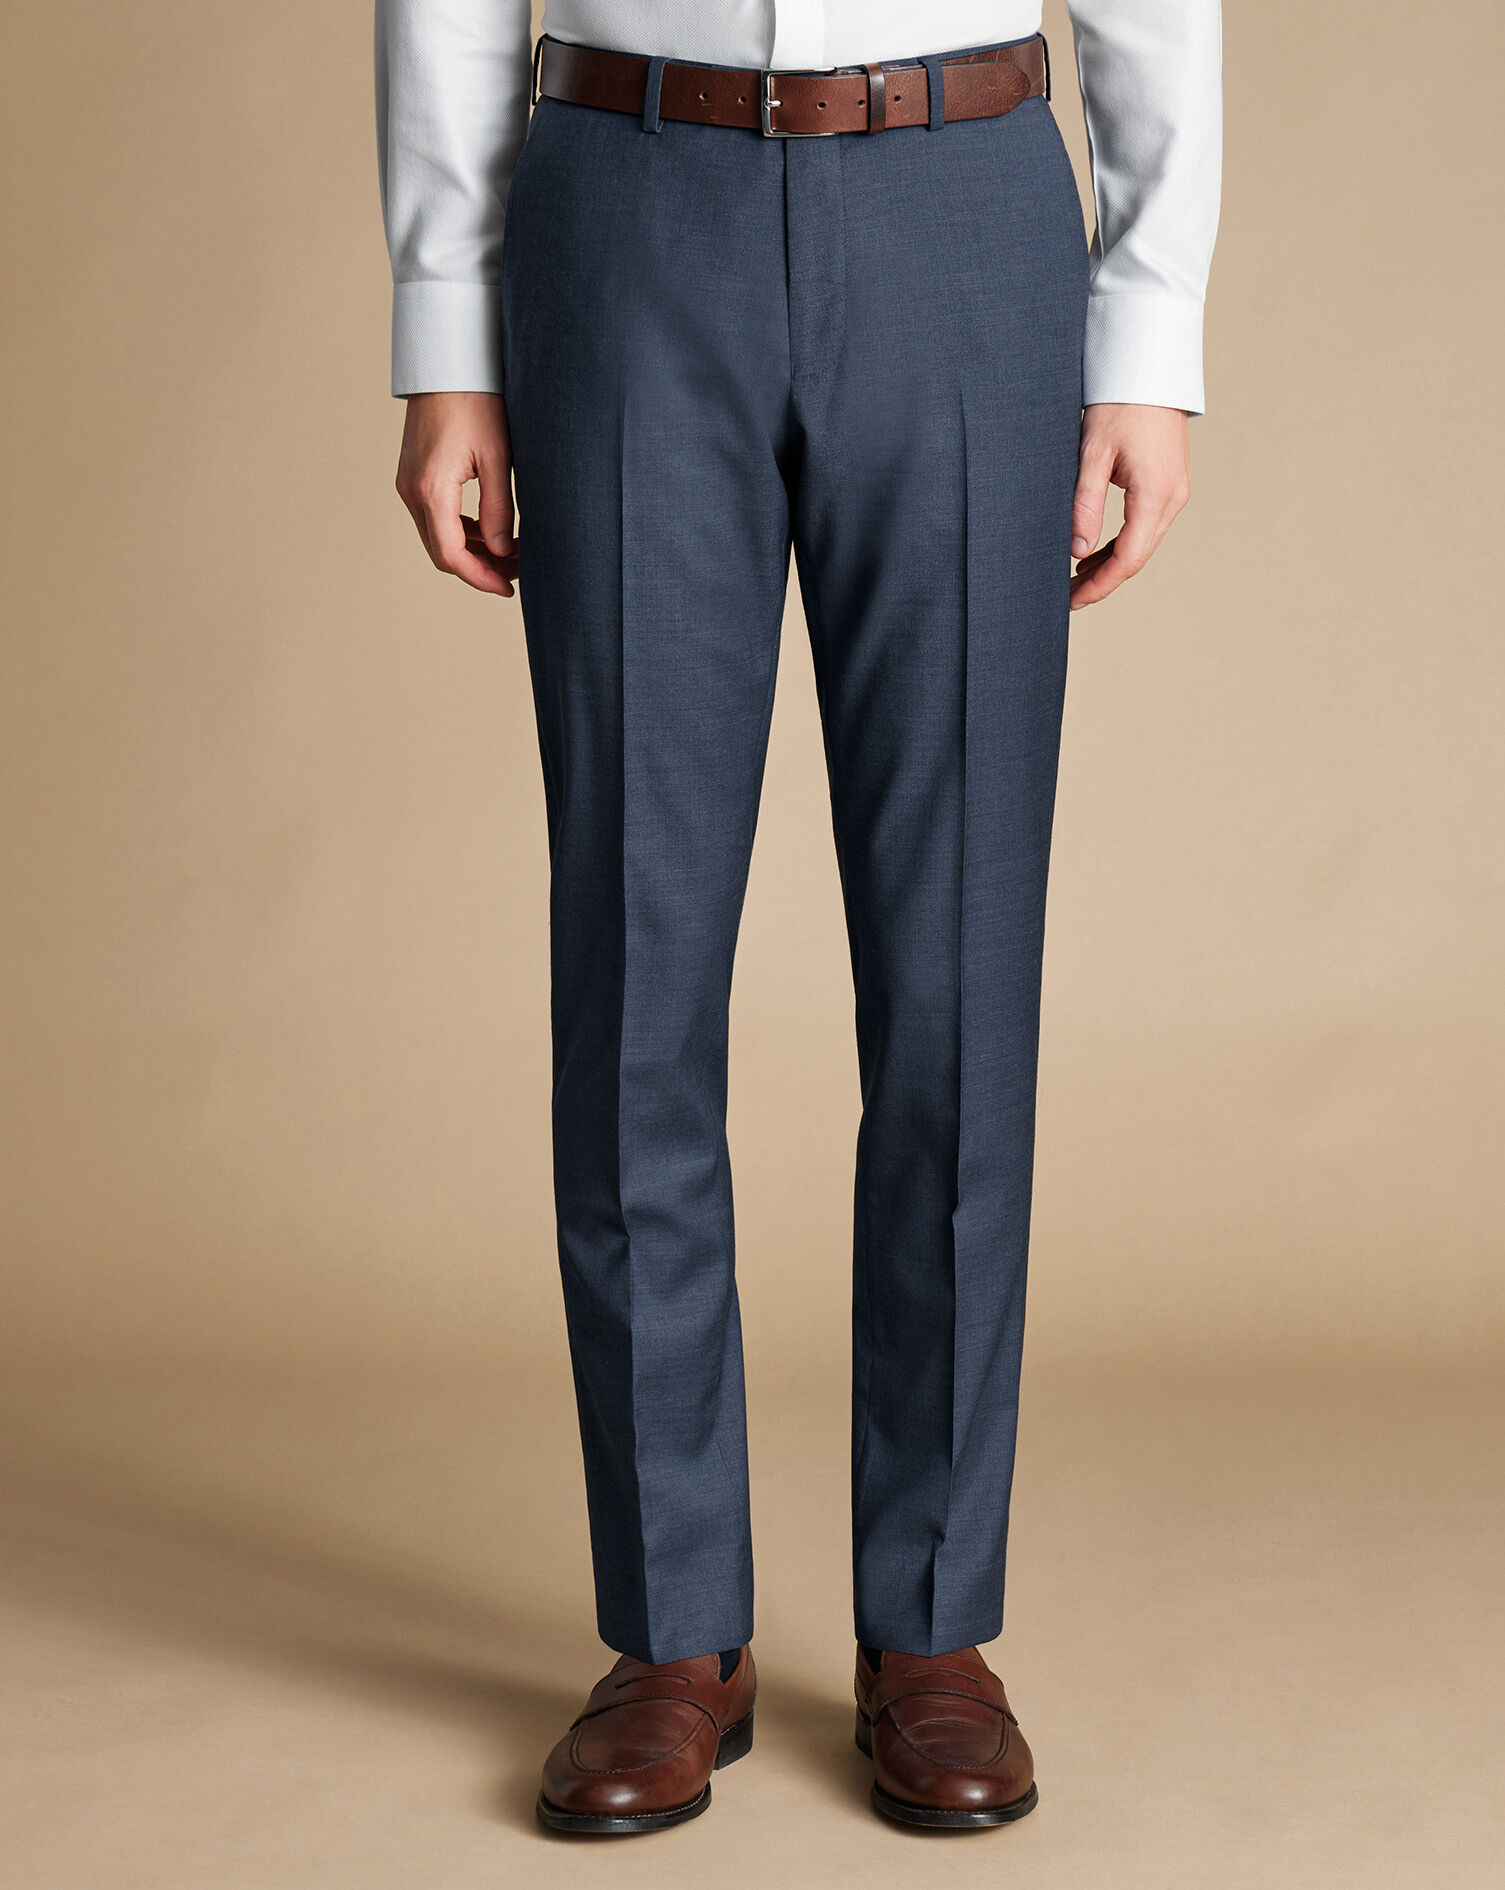 Buy Men's Charles Tyrwhitt Casual Trousers Online | Next UK